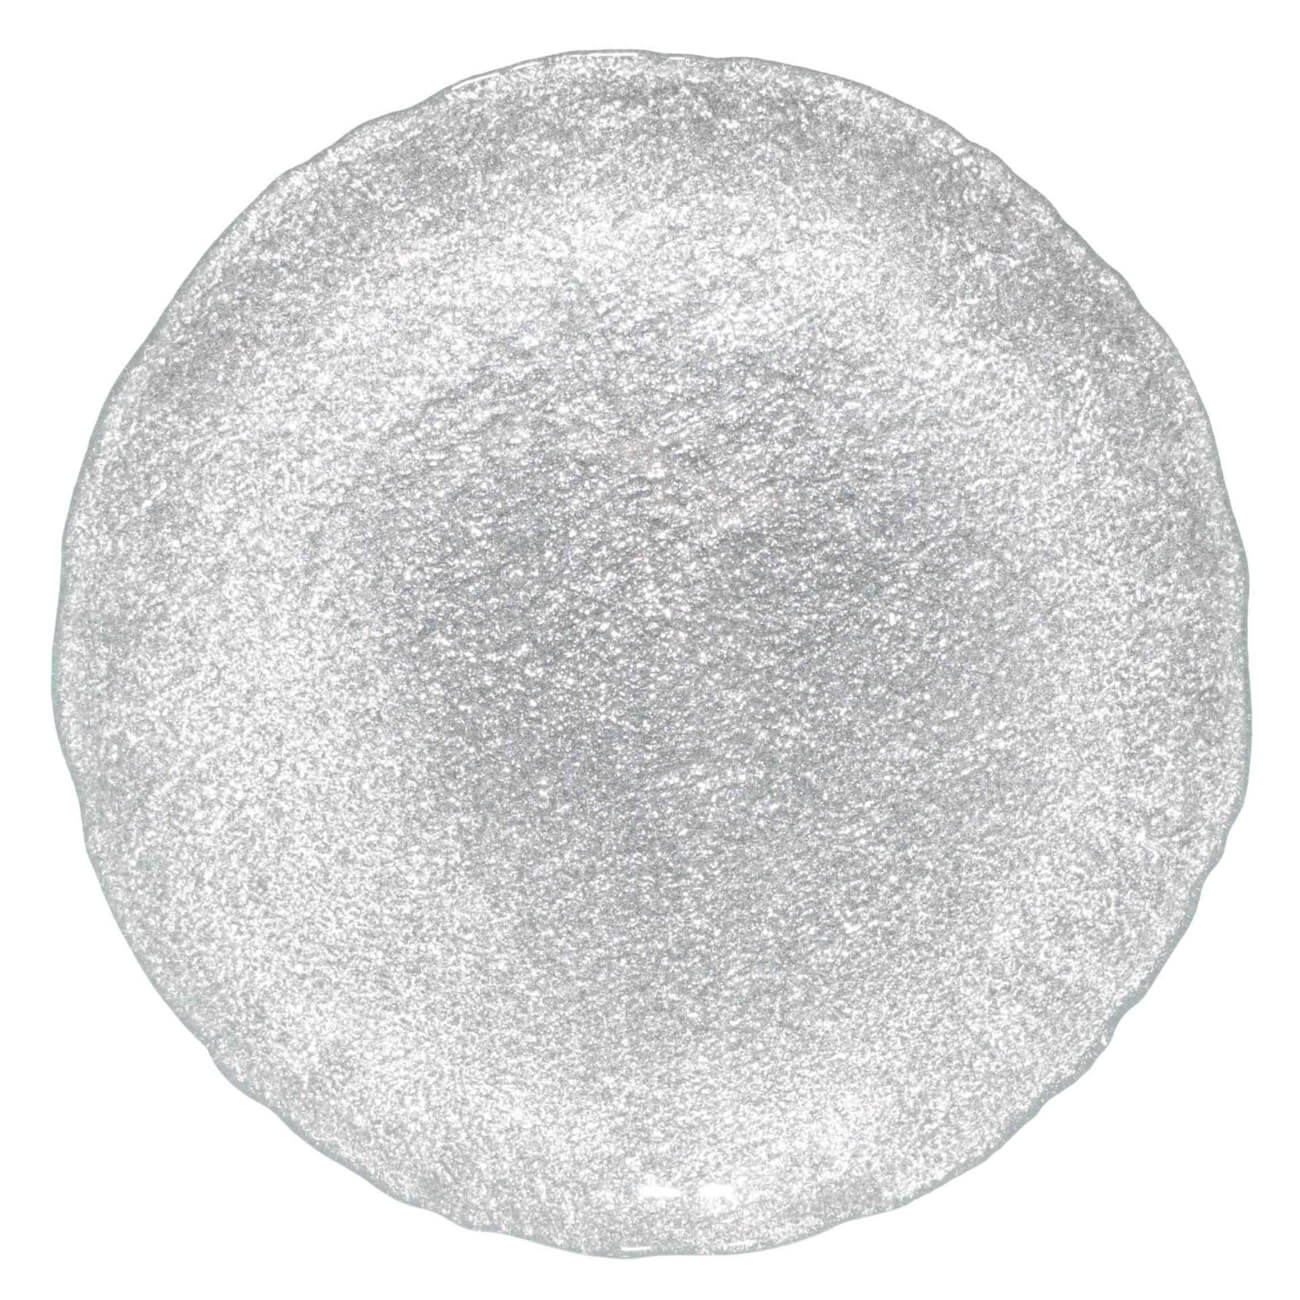 Тарелка обеденная, 27 см, стекло, серебристая, Antares - фото 1